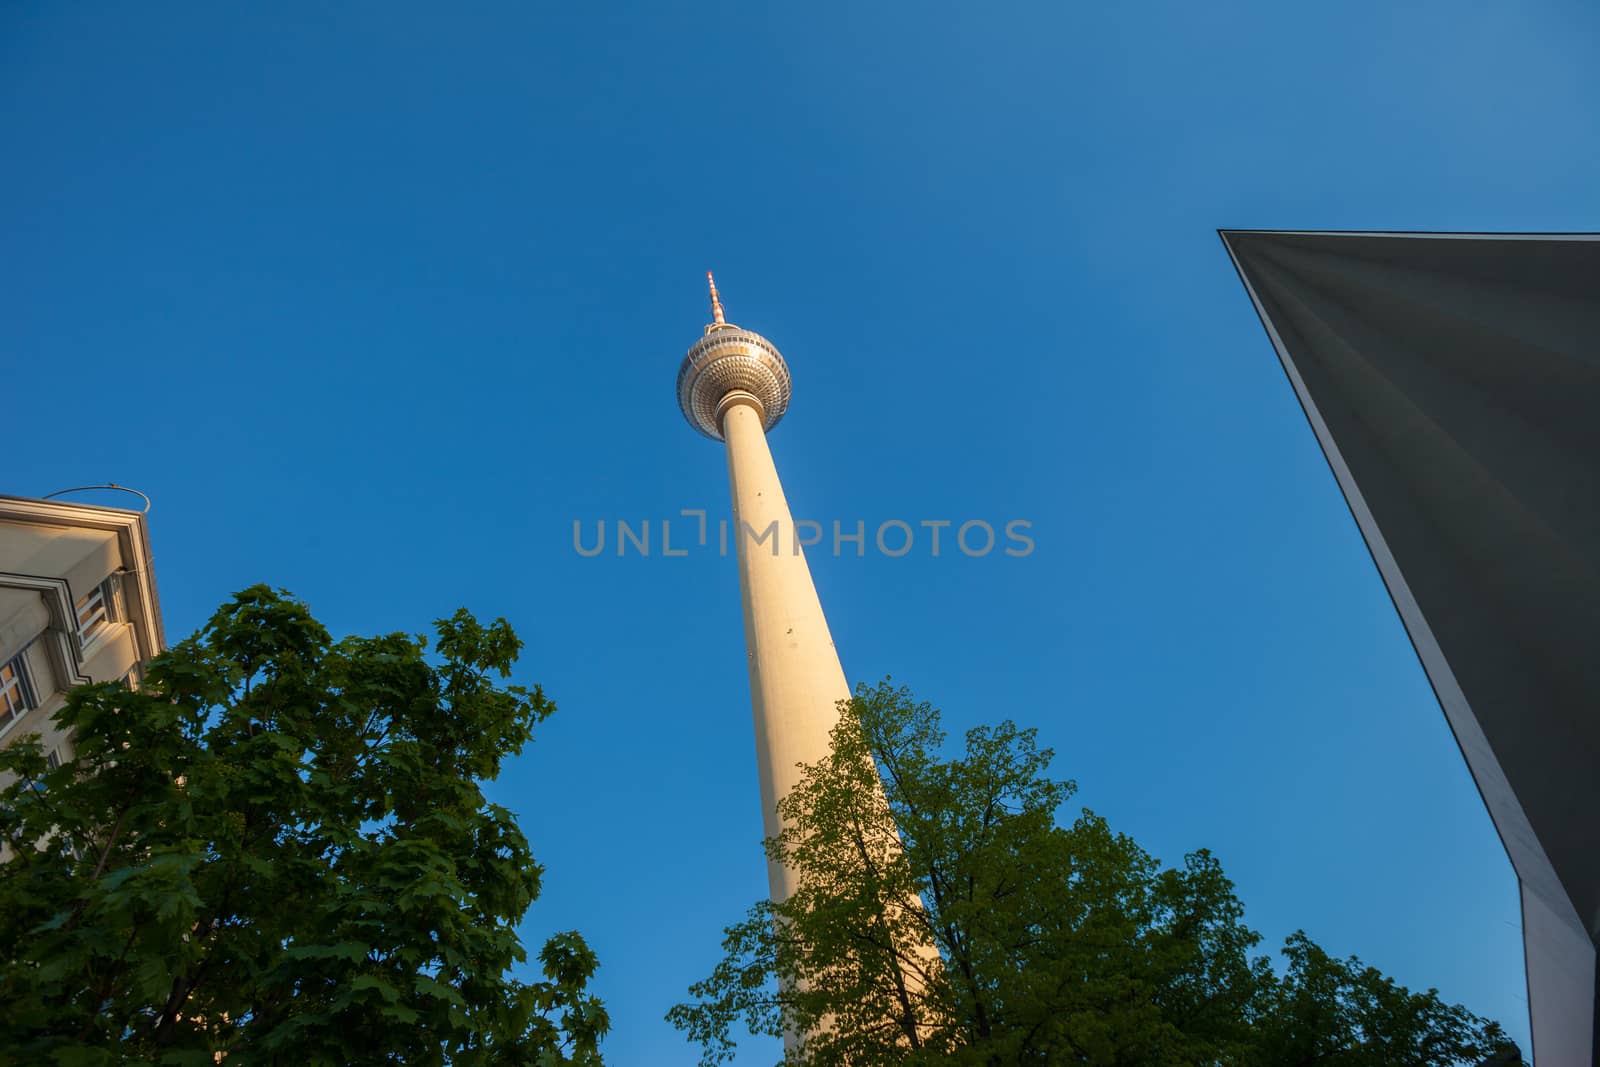 The Fernsehturm (TV Tower) seen at Berlin's Alexanderplatz from below